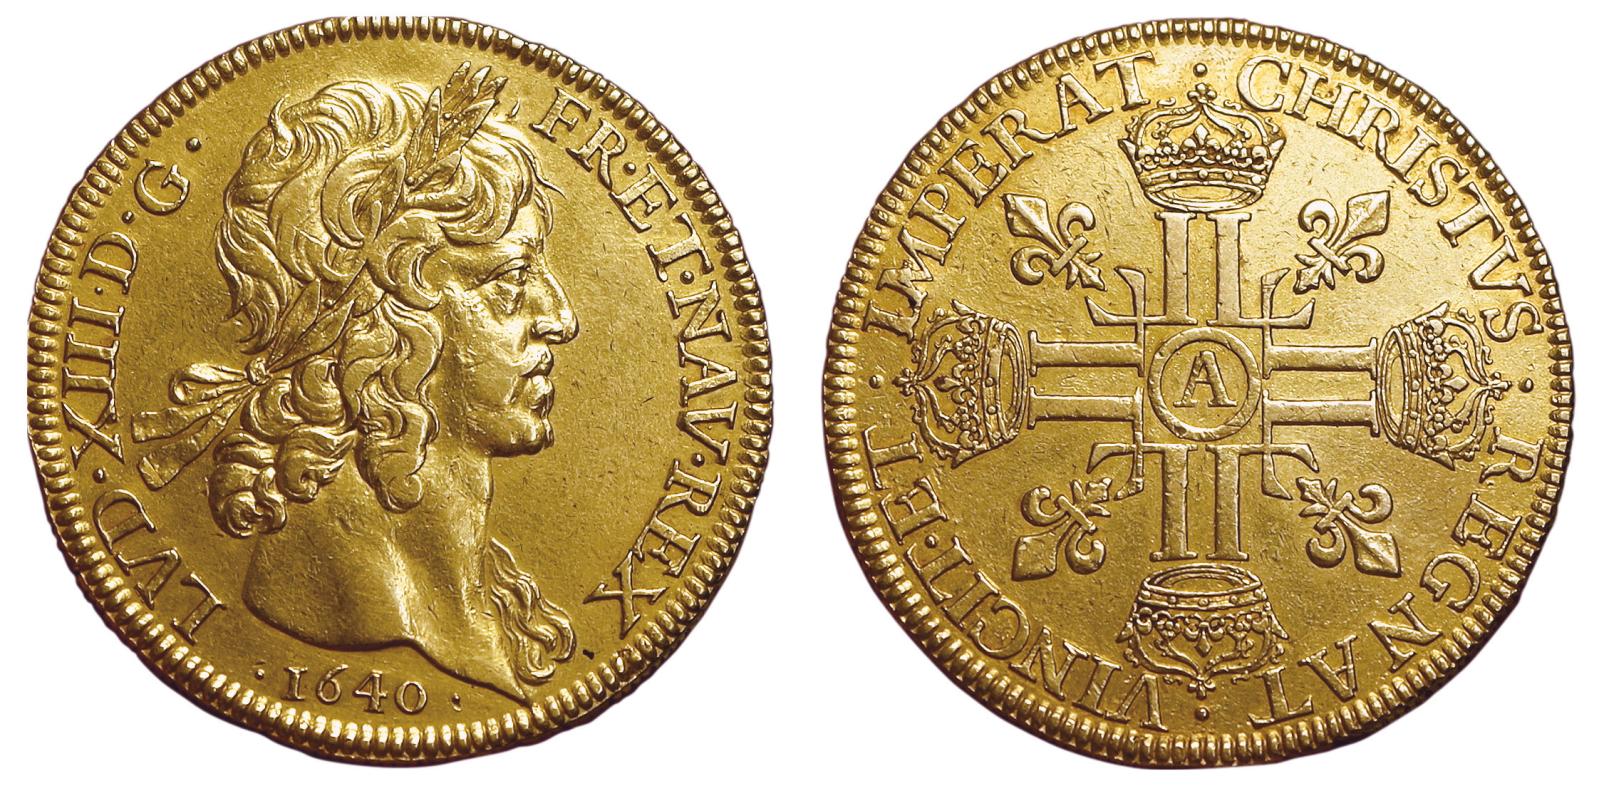 Parmi les monnaies dites «de plaisir» figuraient aussi des pièces de 8 louis, à l’image de ce bel exemplaire au profil de Louis XIII, à la